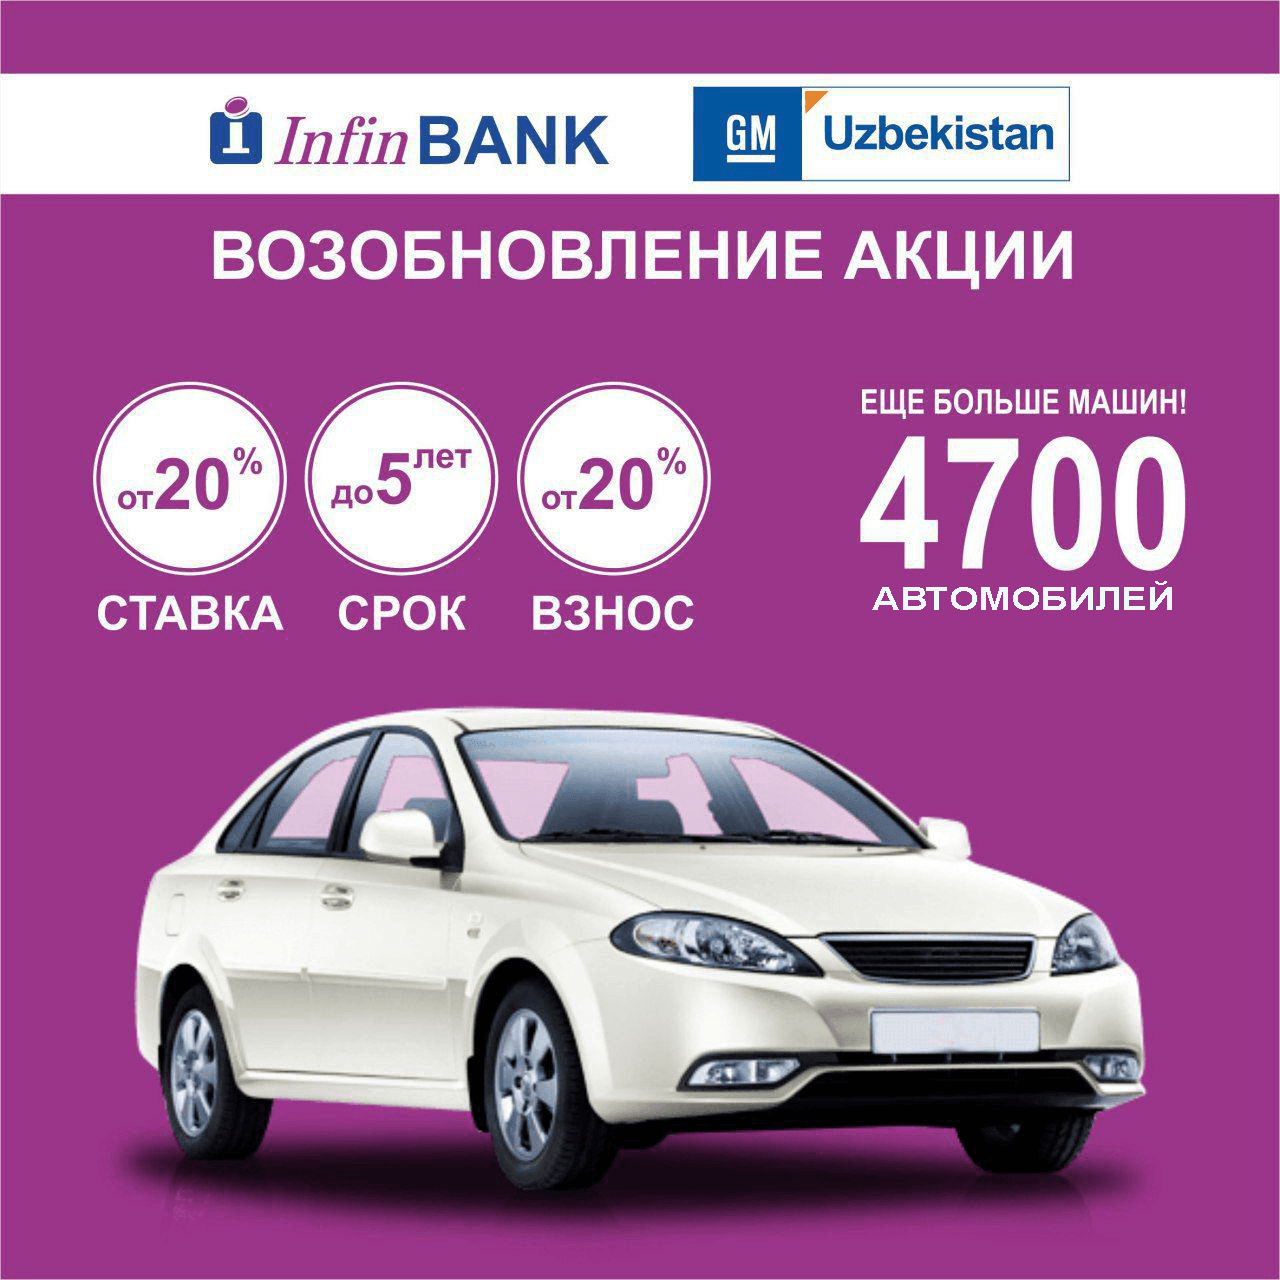 узбекистан в кредит машину взять